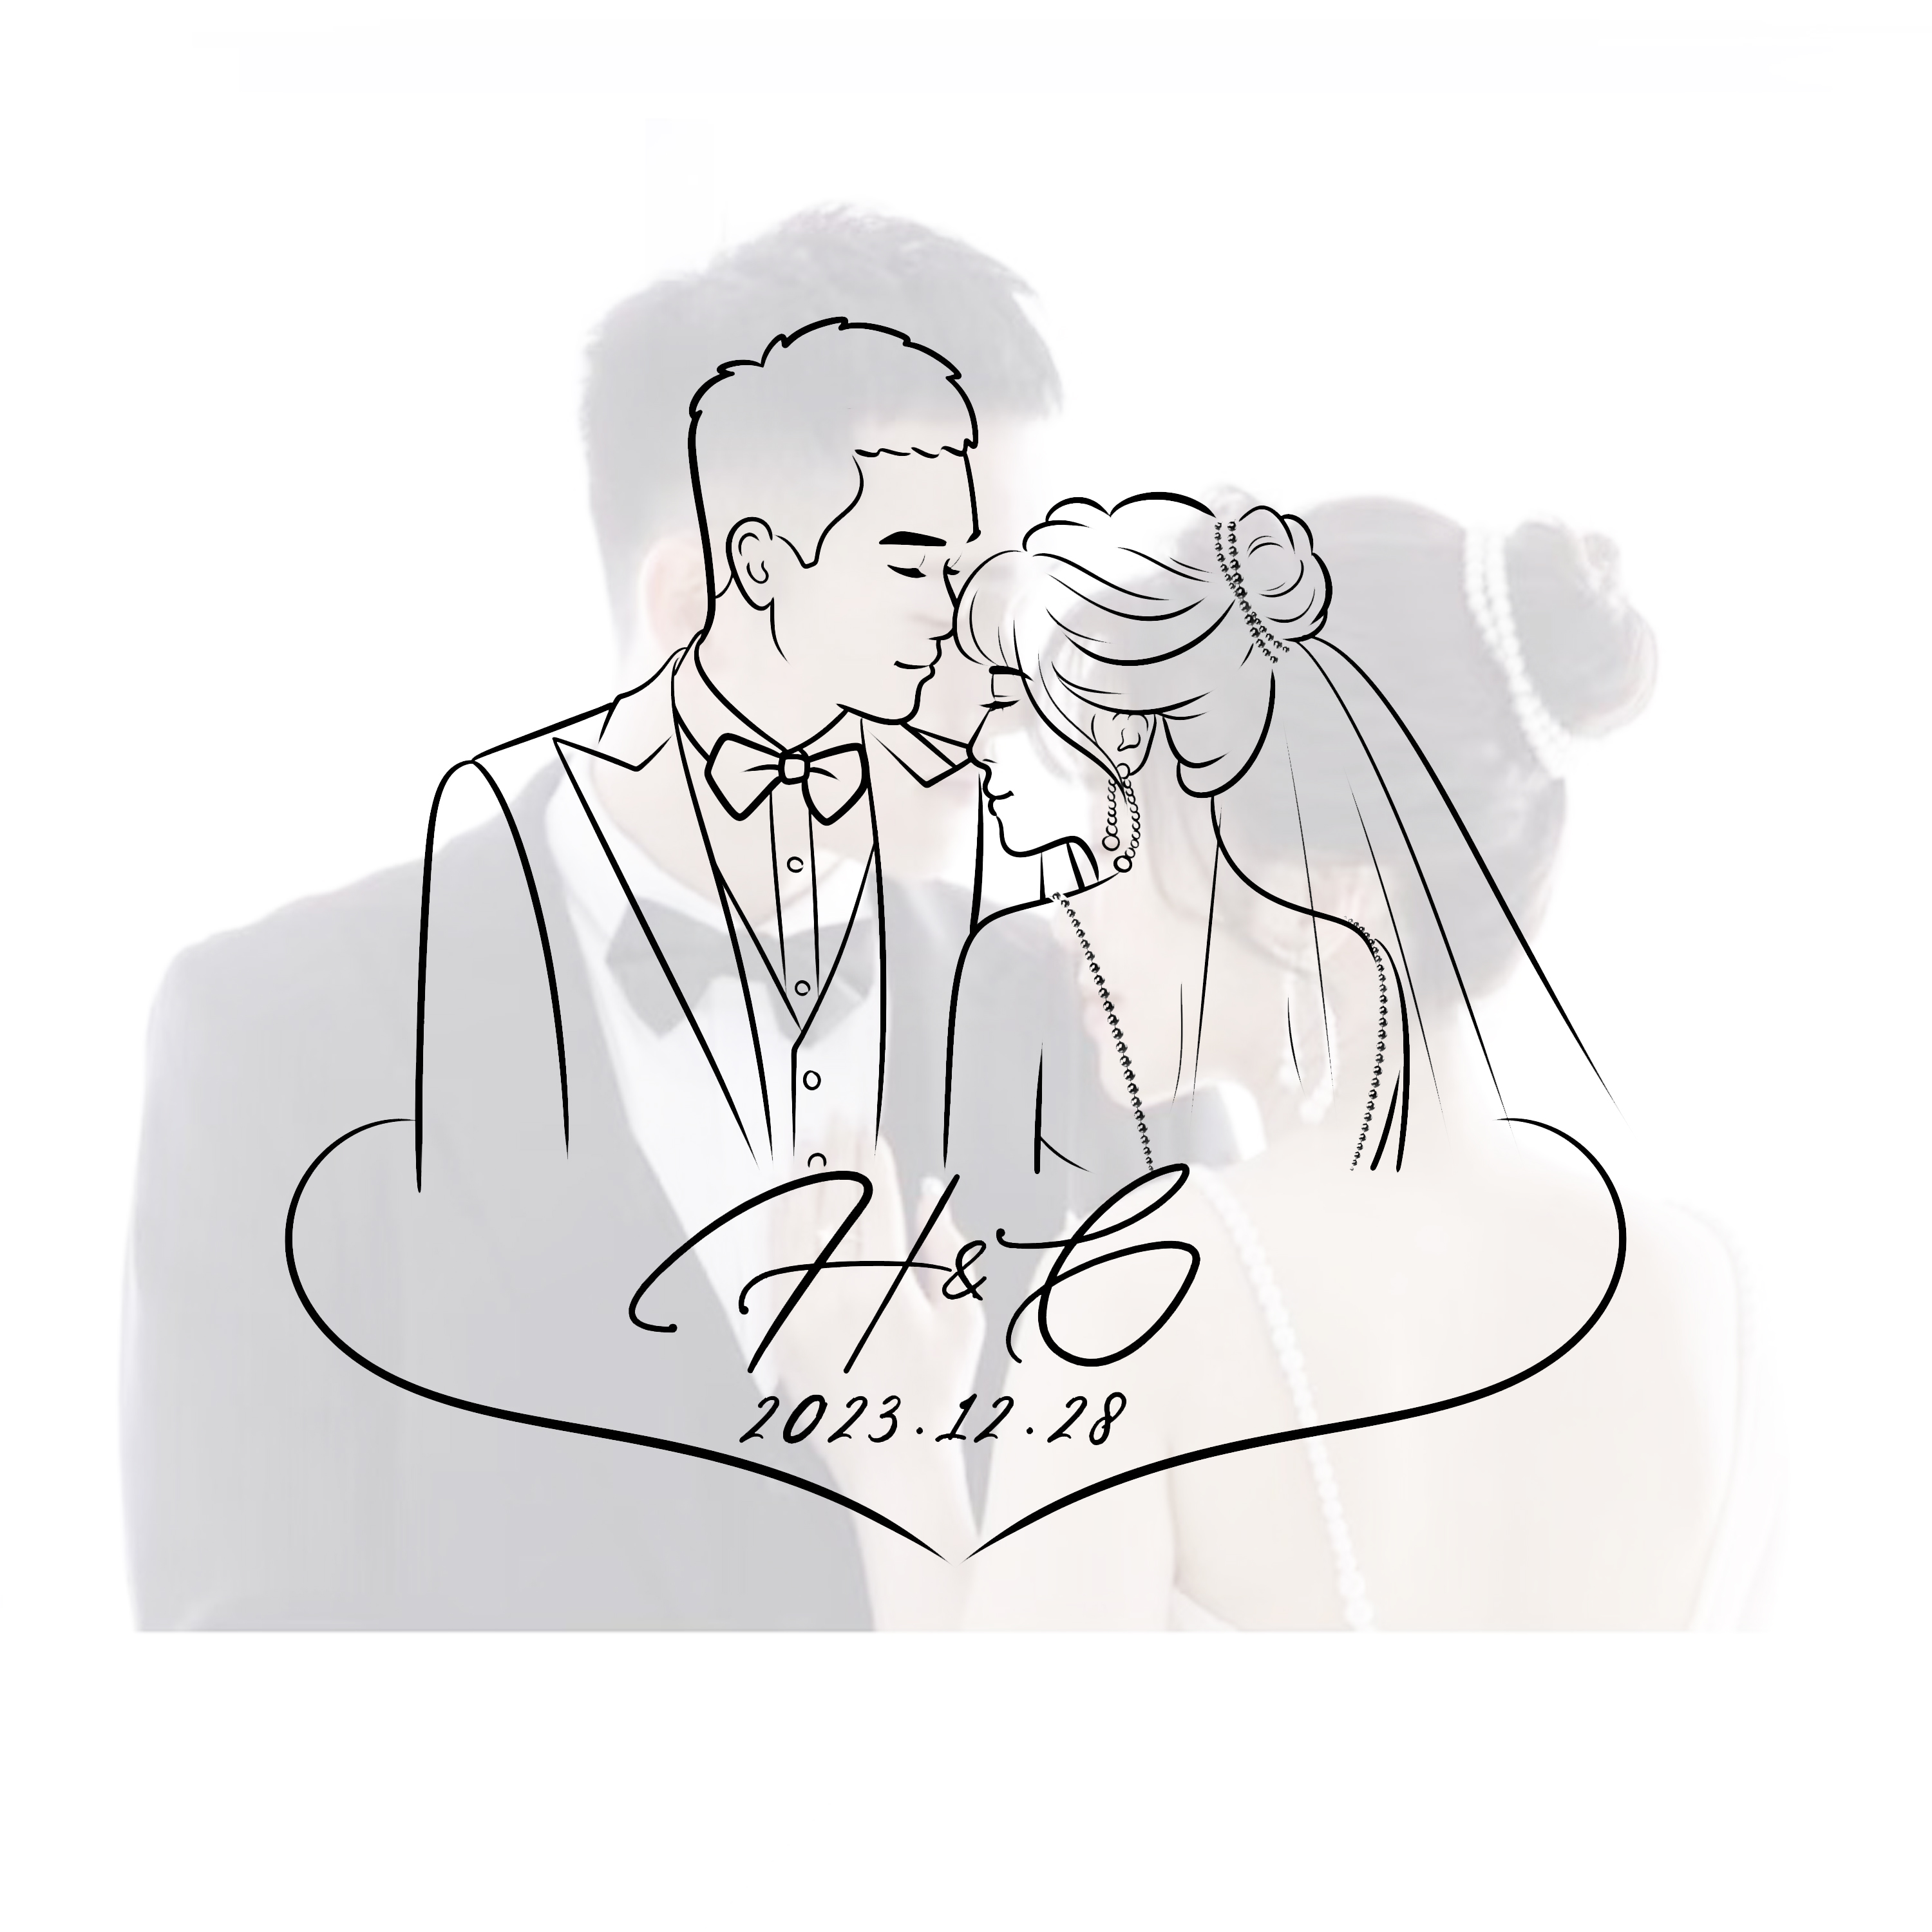 纹身简笔画Q版卡通头像漫画形象设计婚礼LOGO定制情侣真人照片